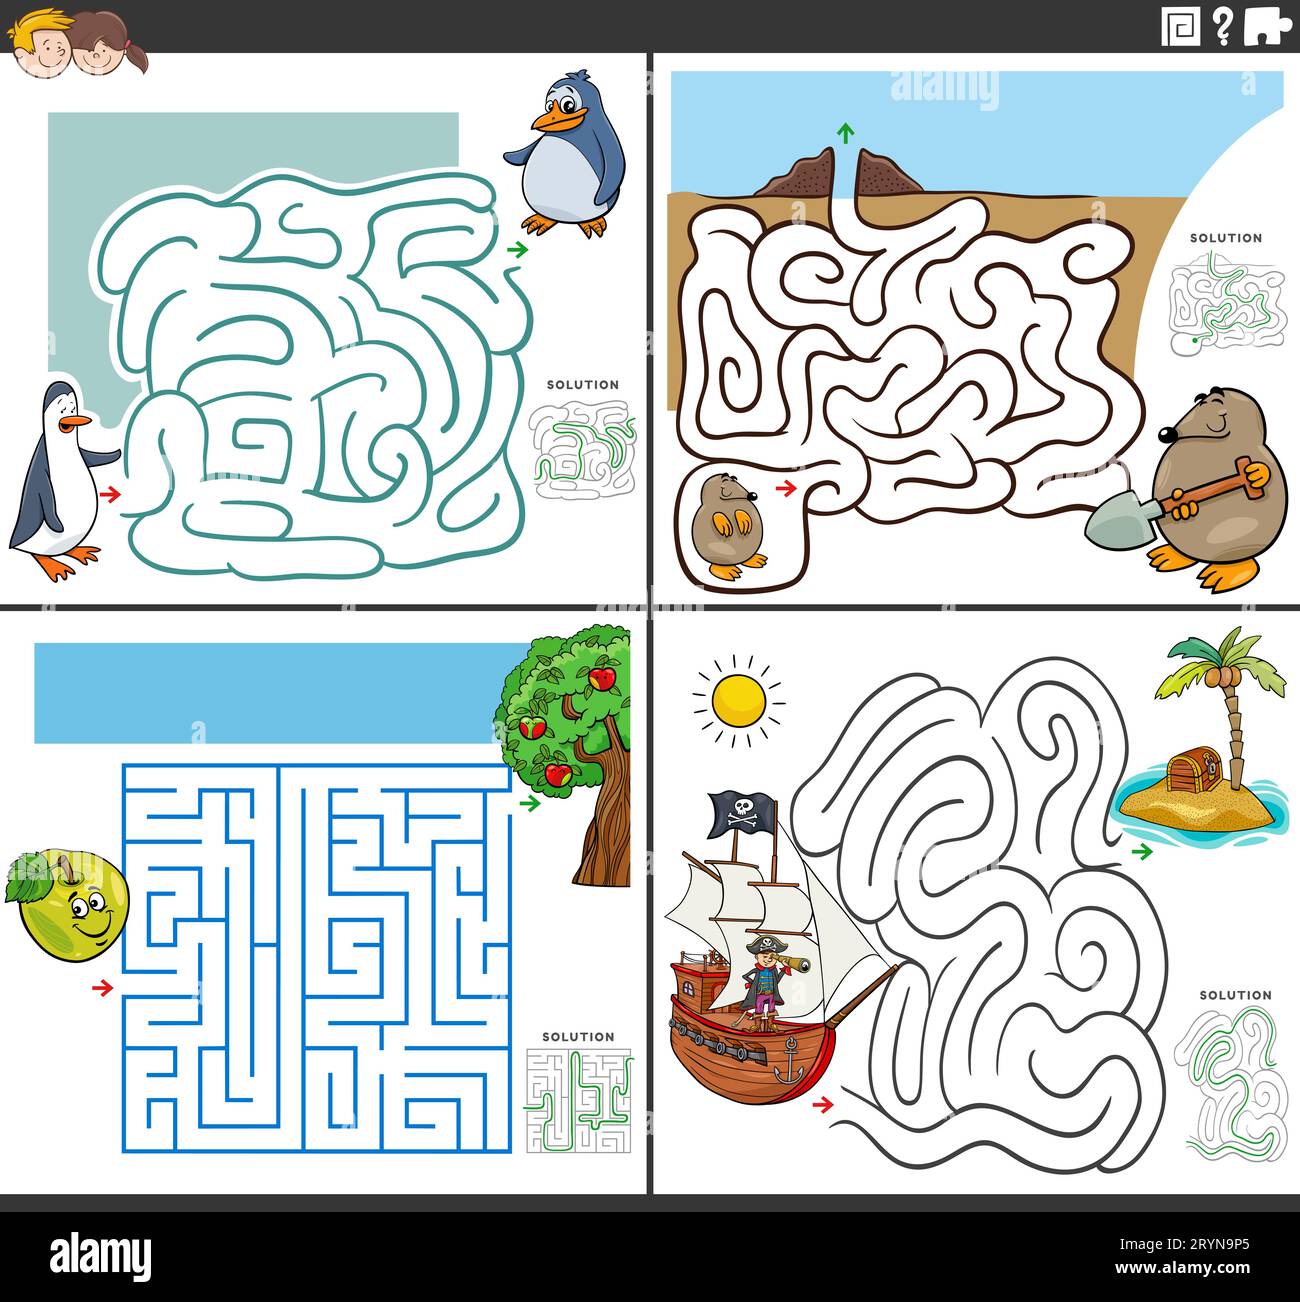 Cartoon-Darstellung von pädagogischen Rätselspielen aus dem Labyrinth mit Comicfiguren Stockfoto